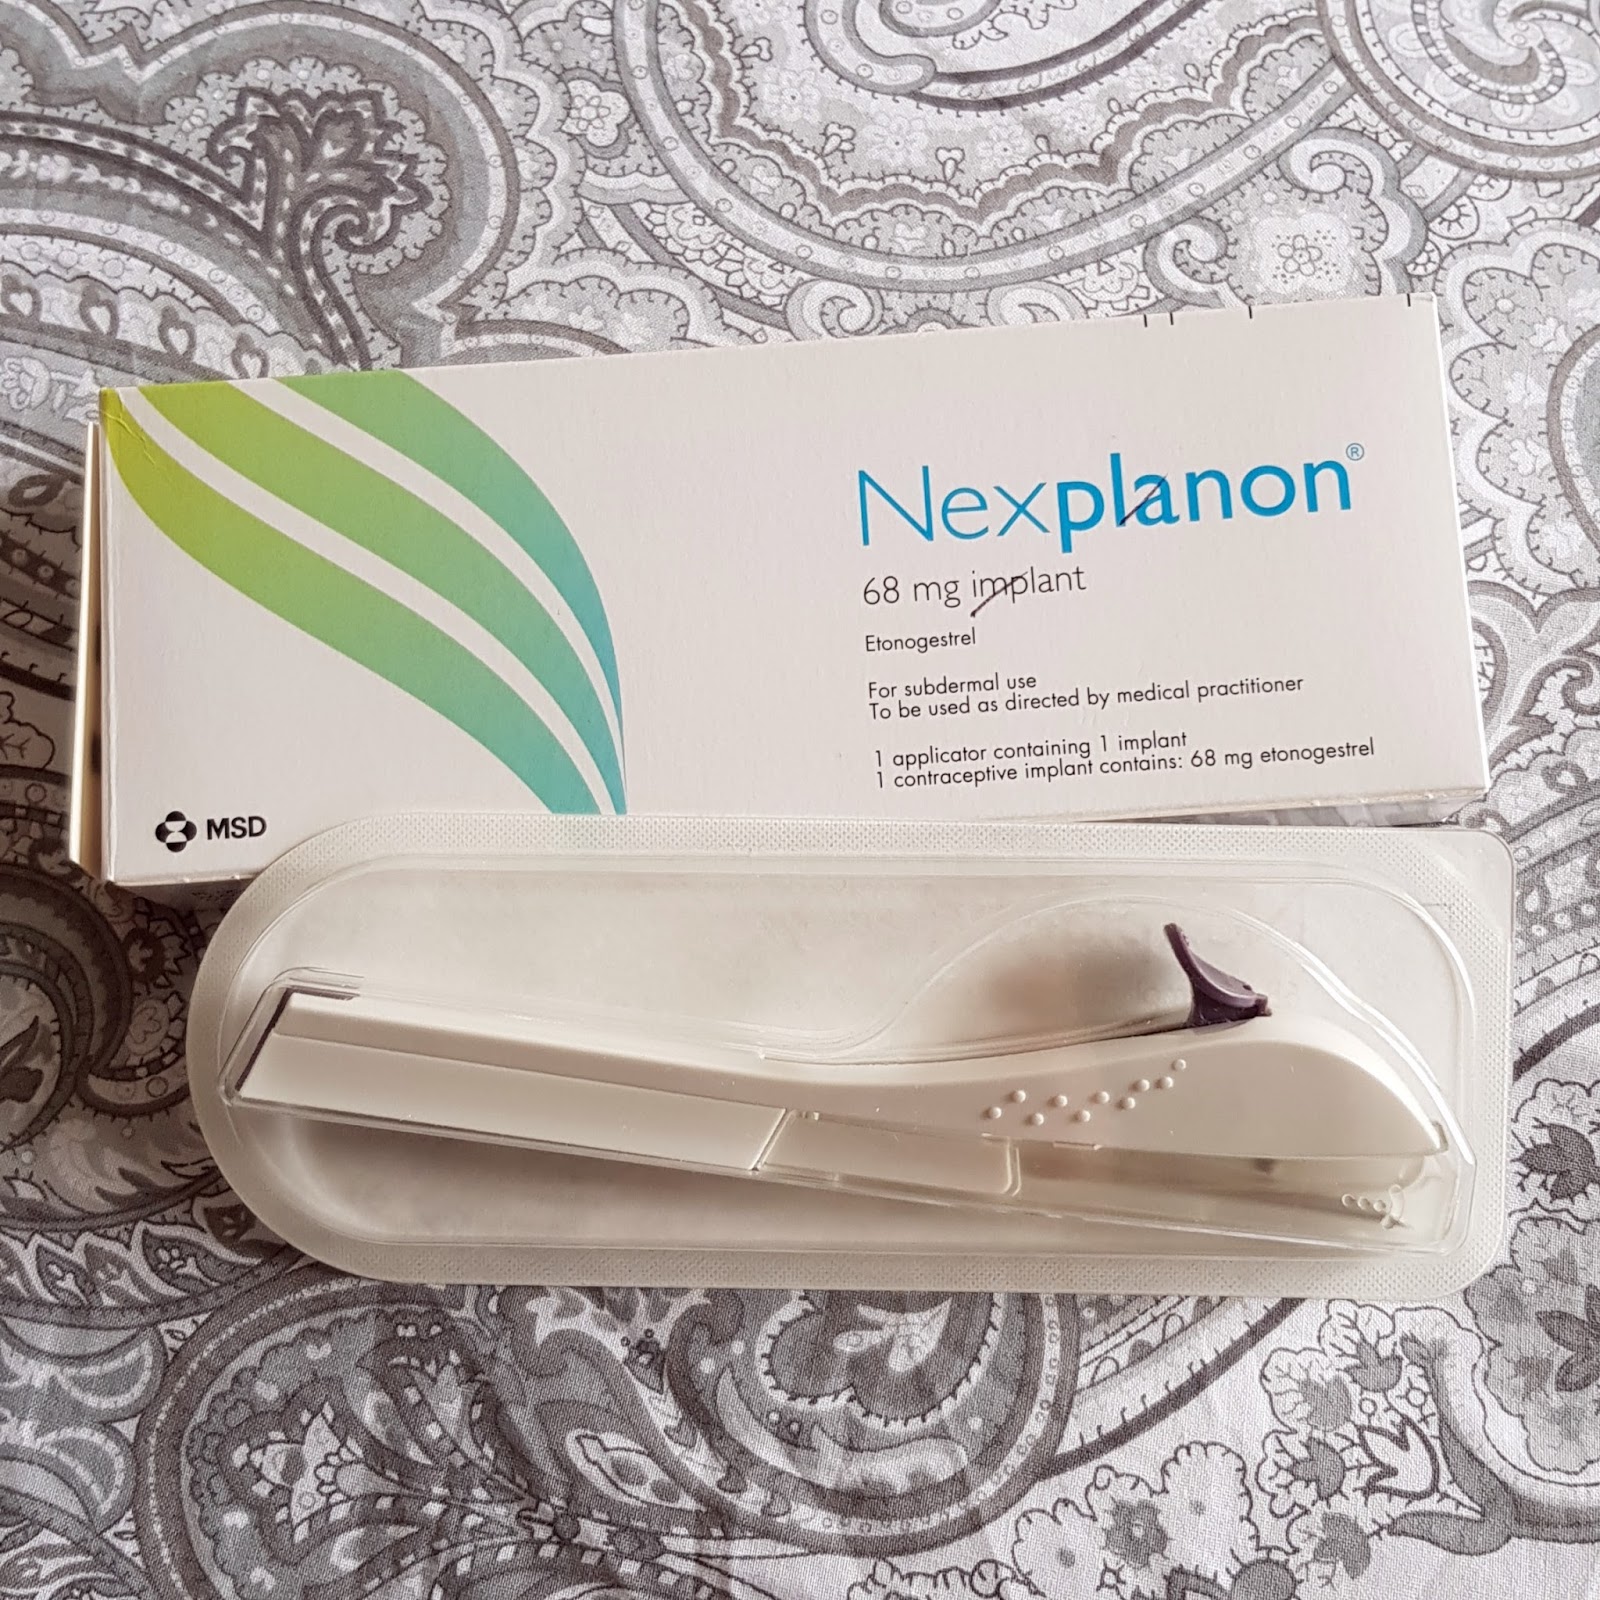 Nexplanon implant